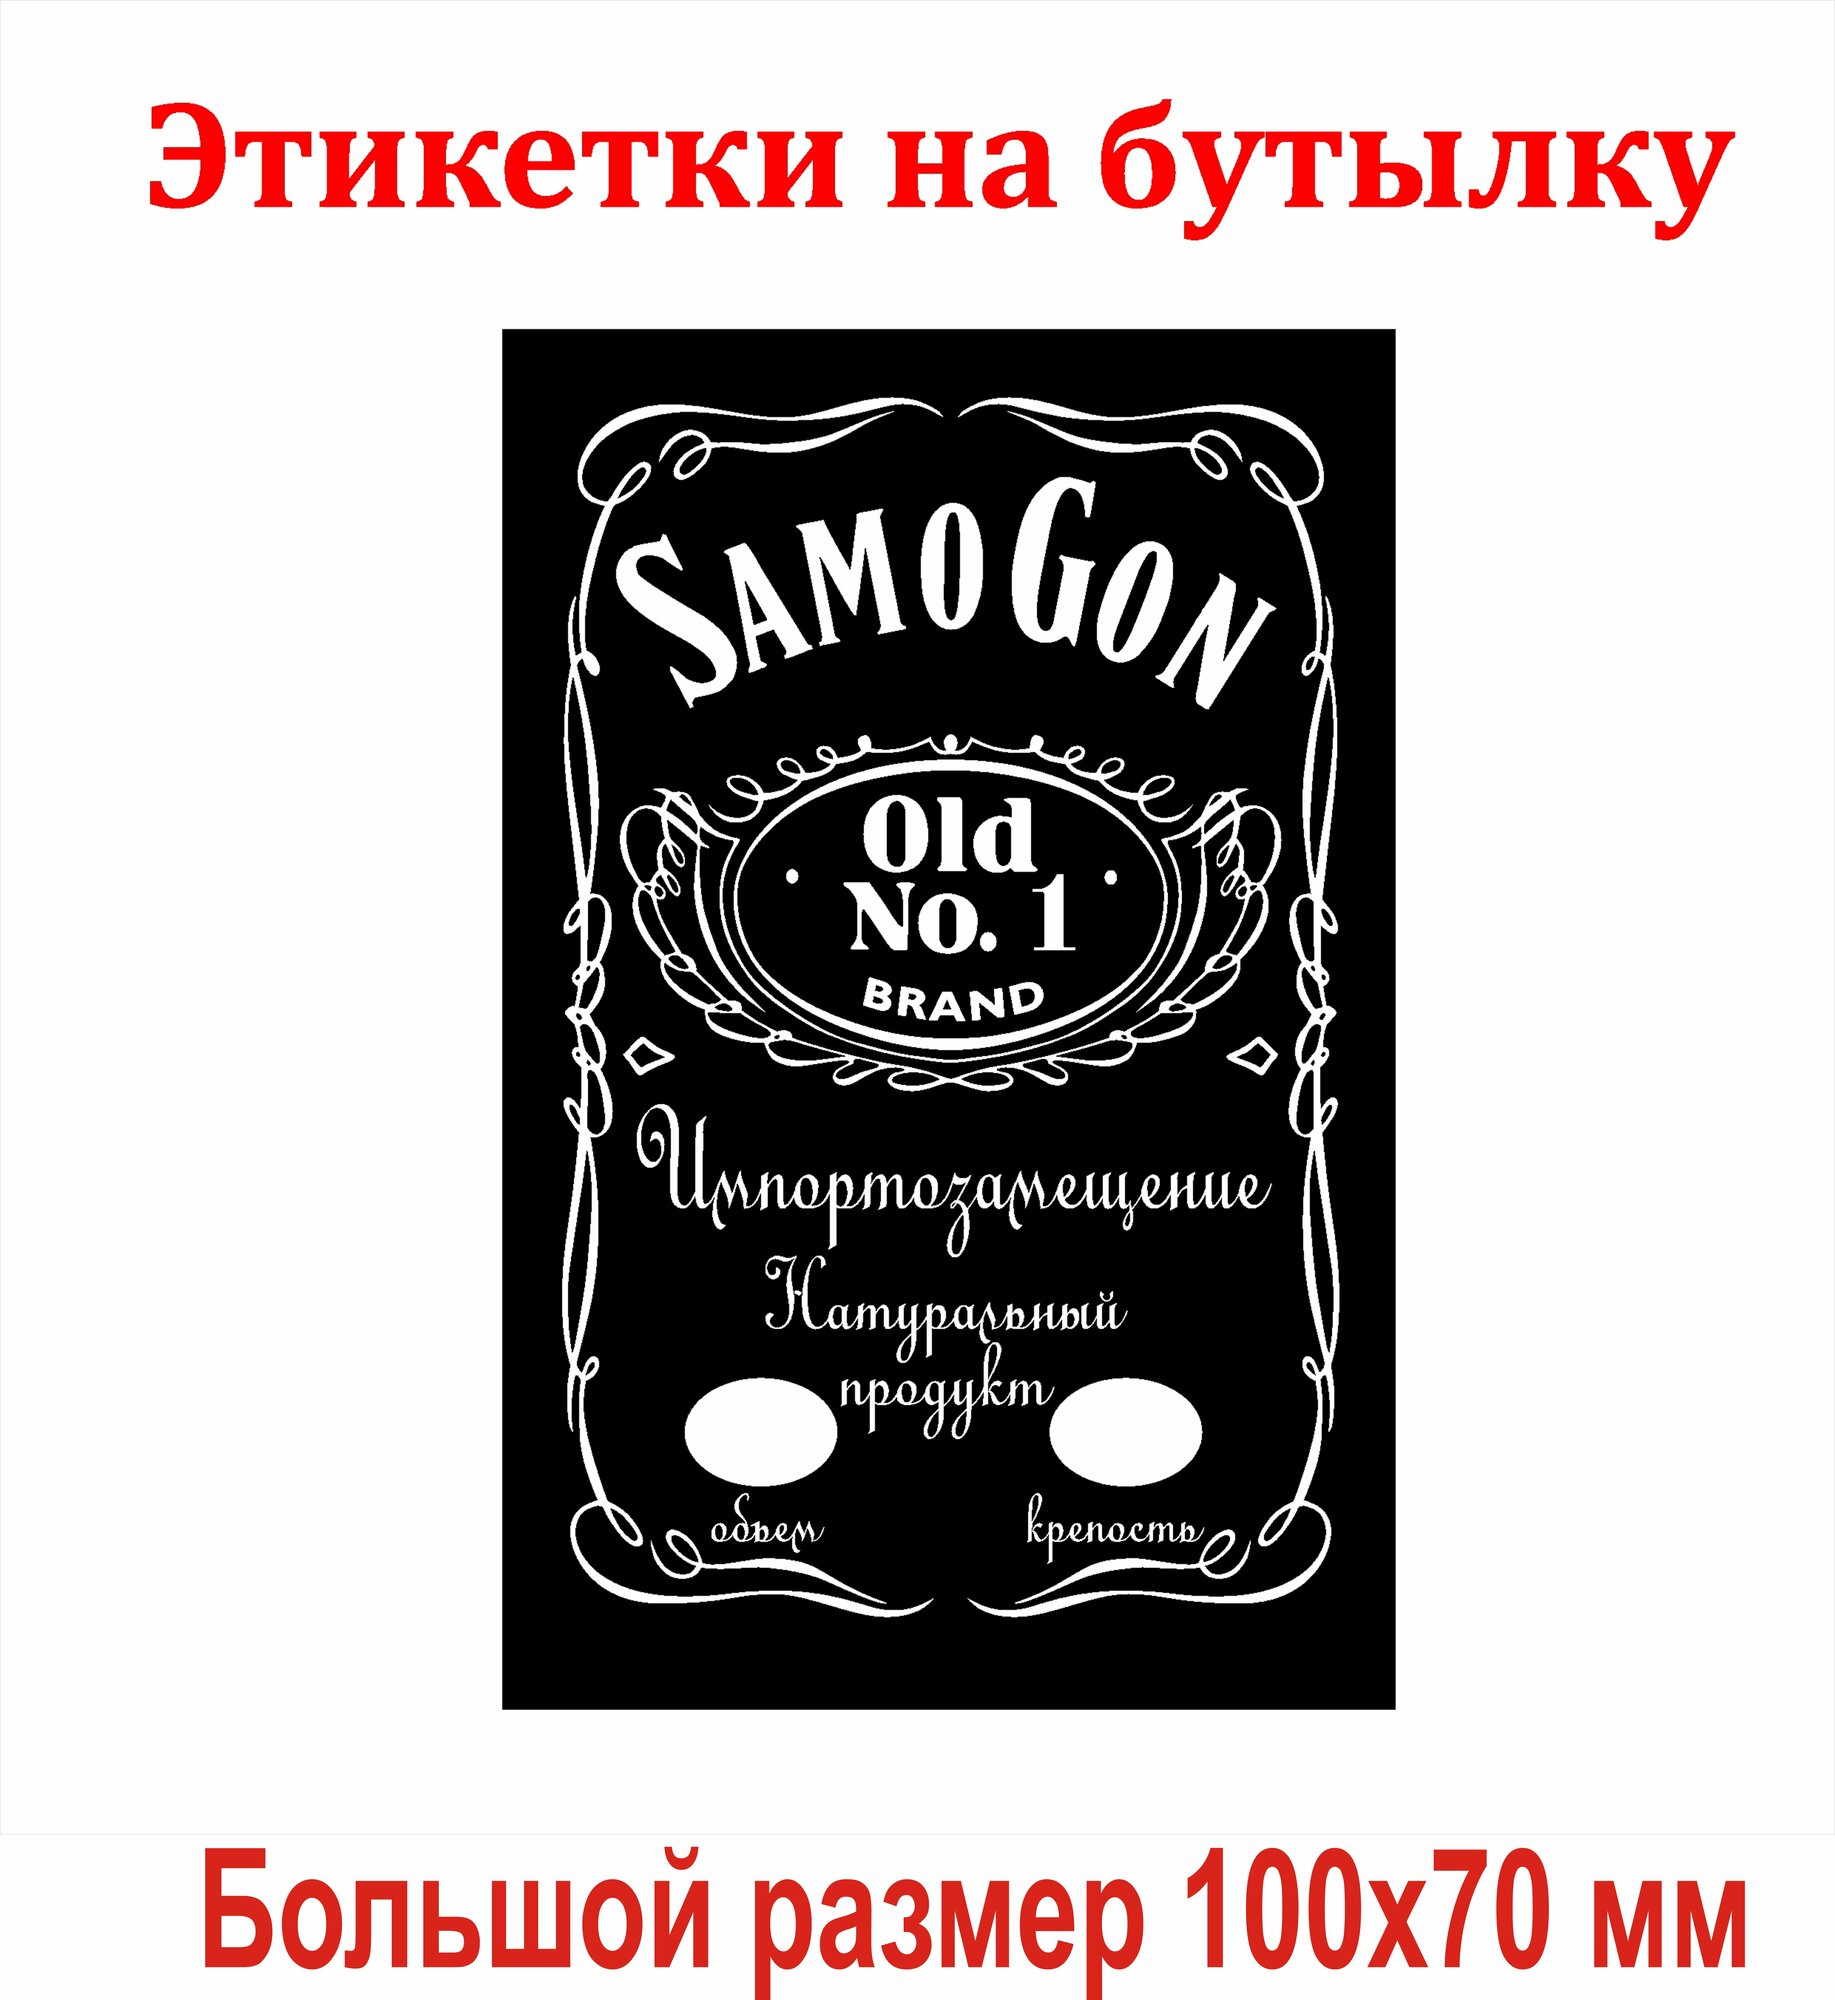 Наклейки для бутылок "SamoGon" большие 100х70мм 15 шт